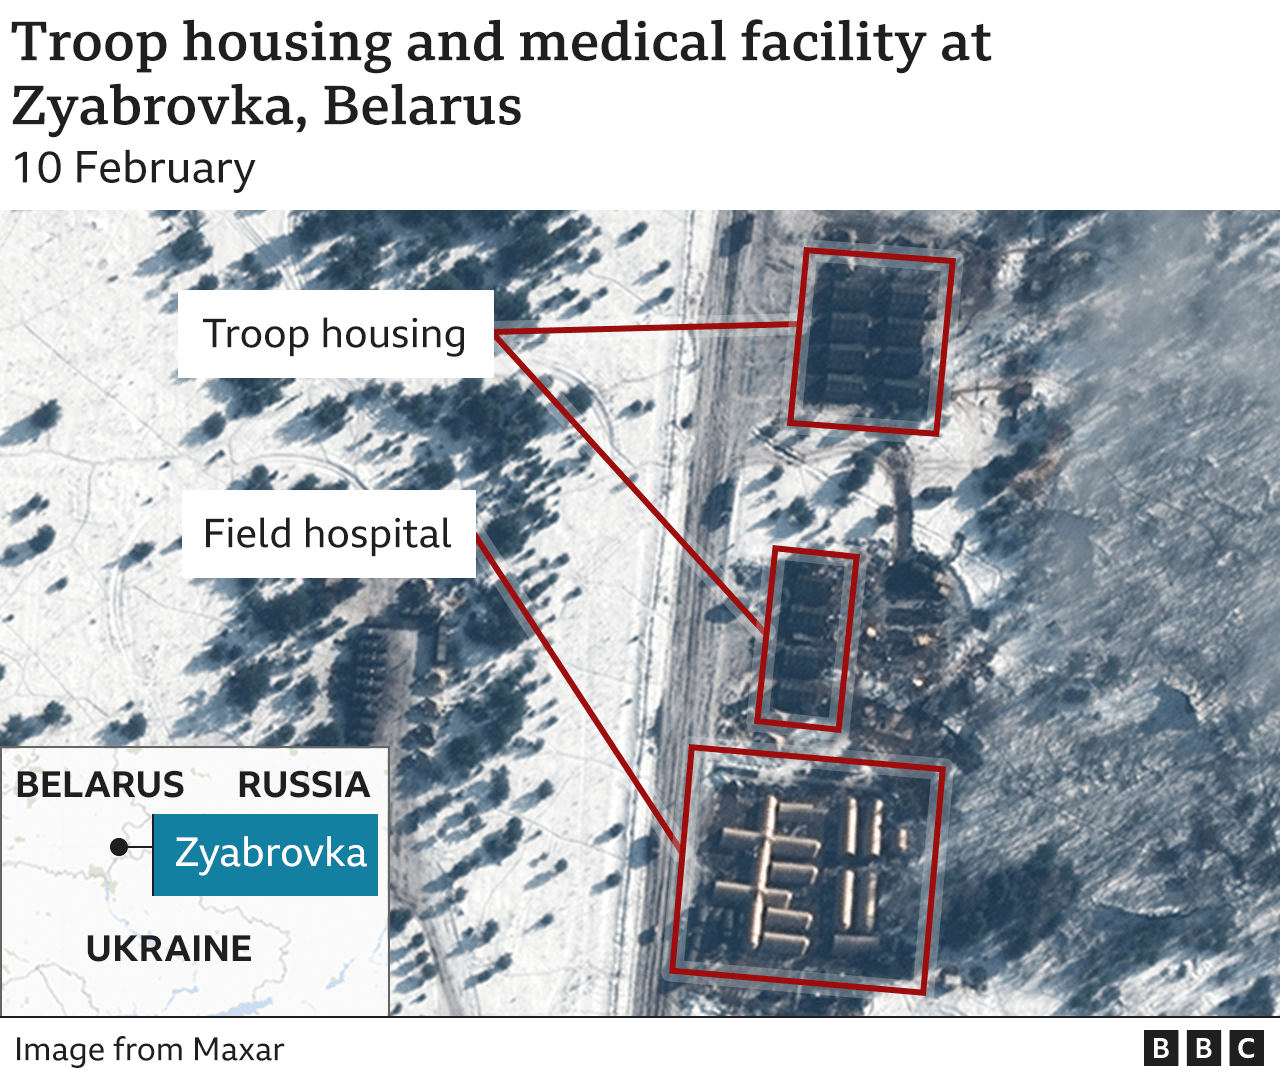 Satellite image showing troop housing and field hospital in Belarus